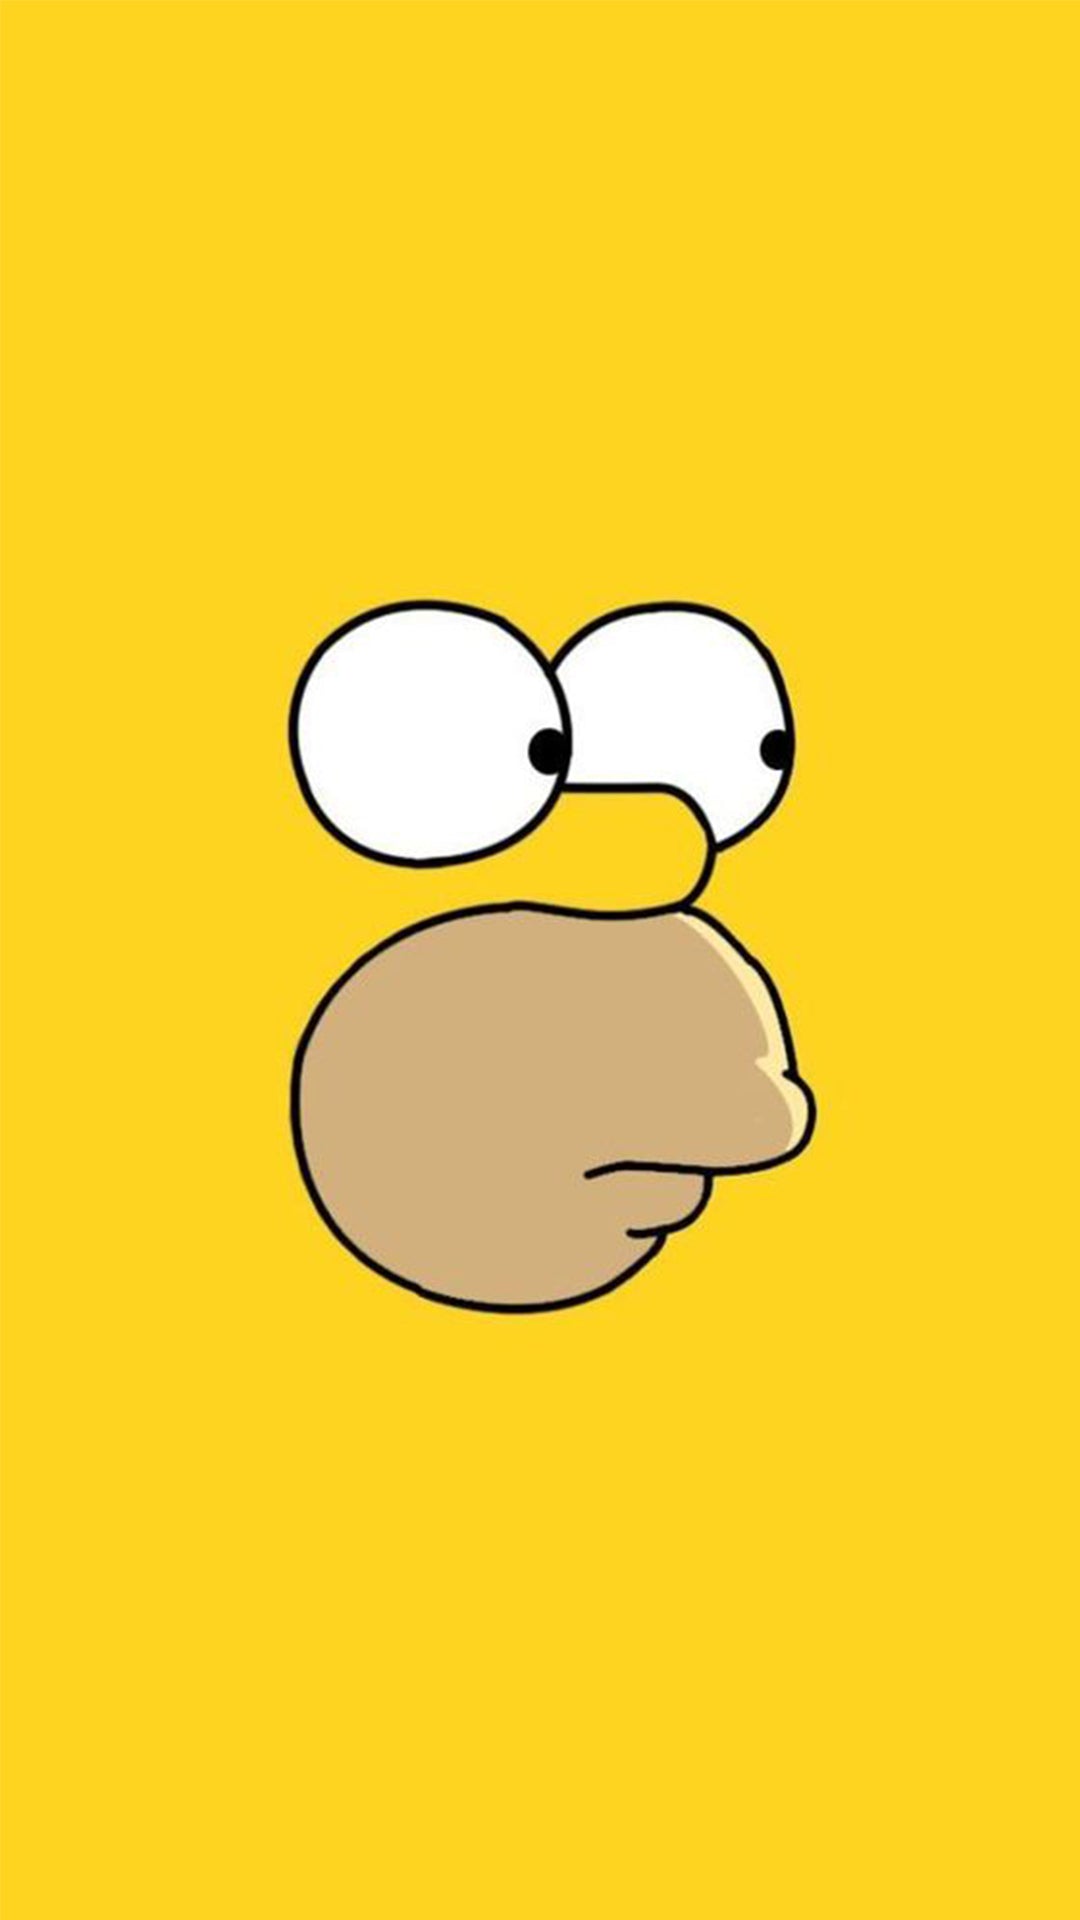 Le visage d’Homer sur fond jaune.